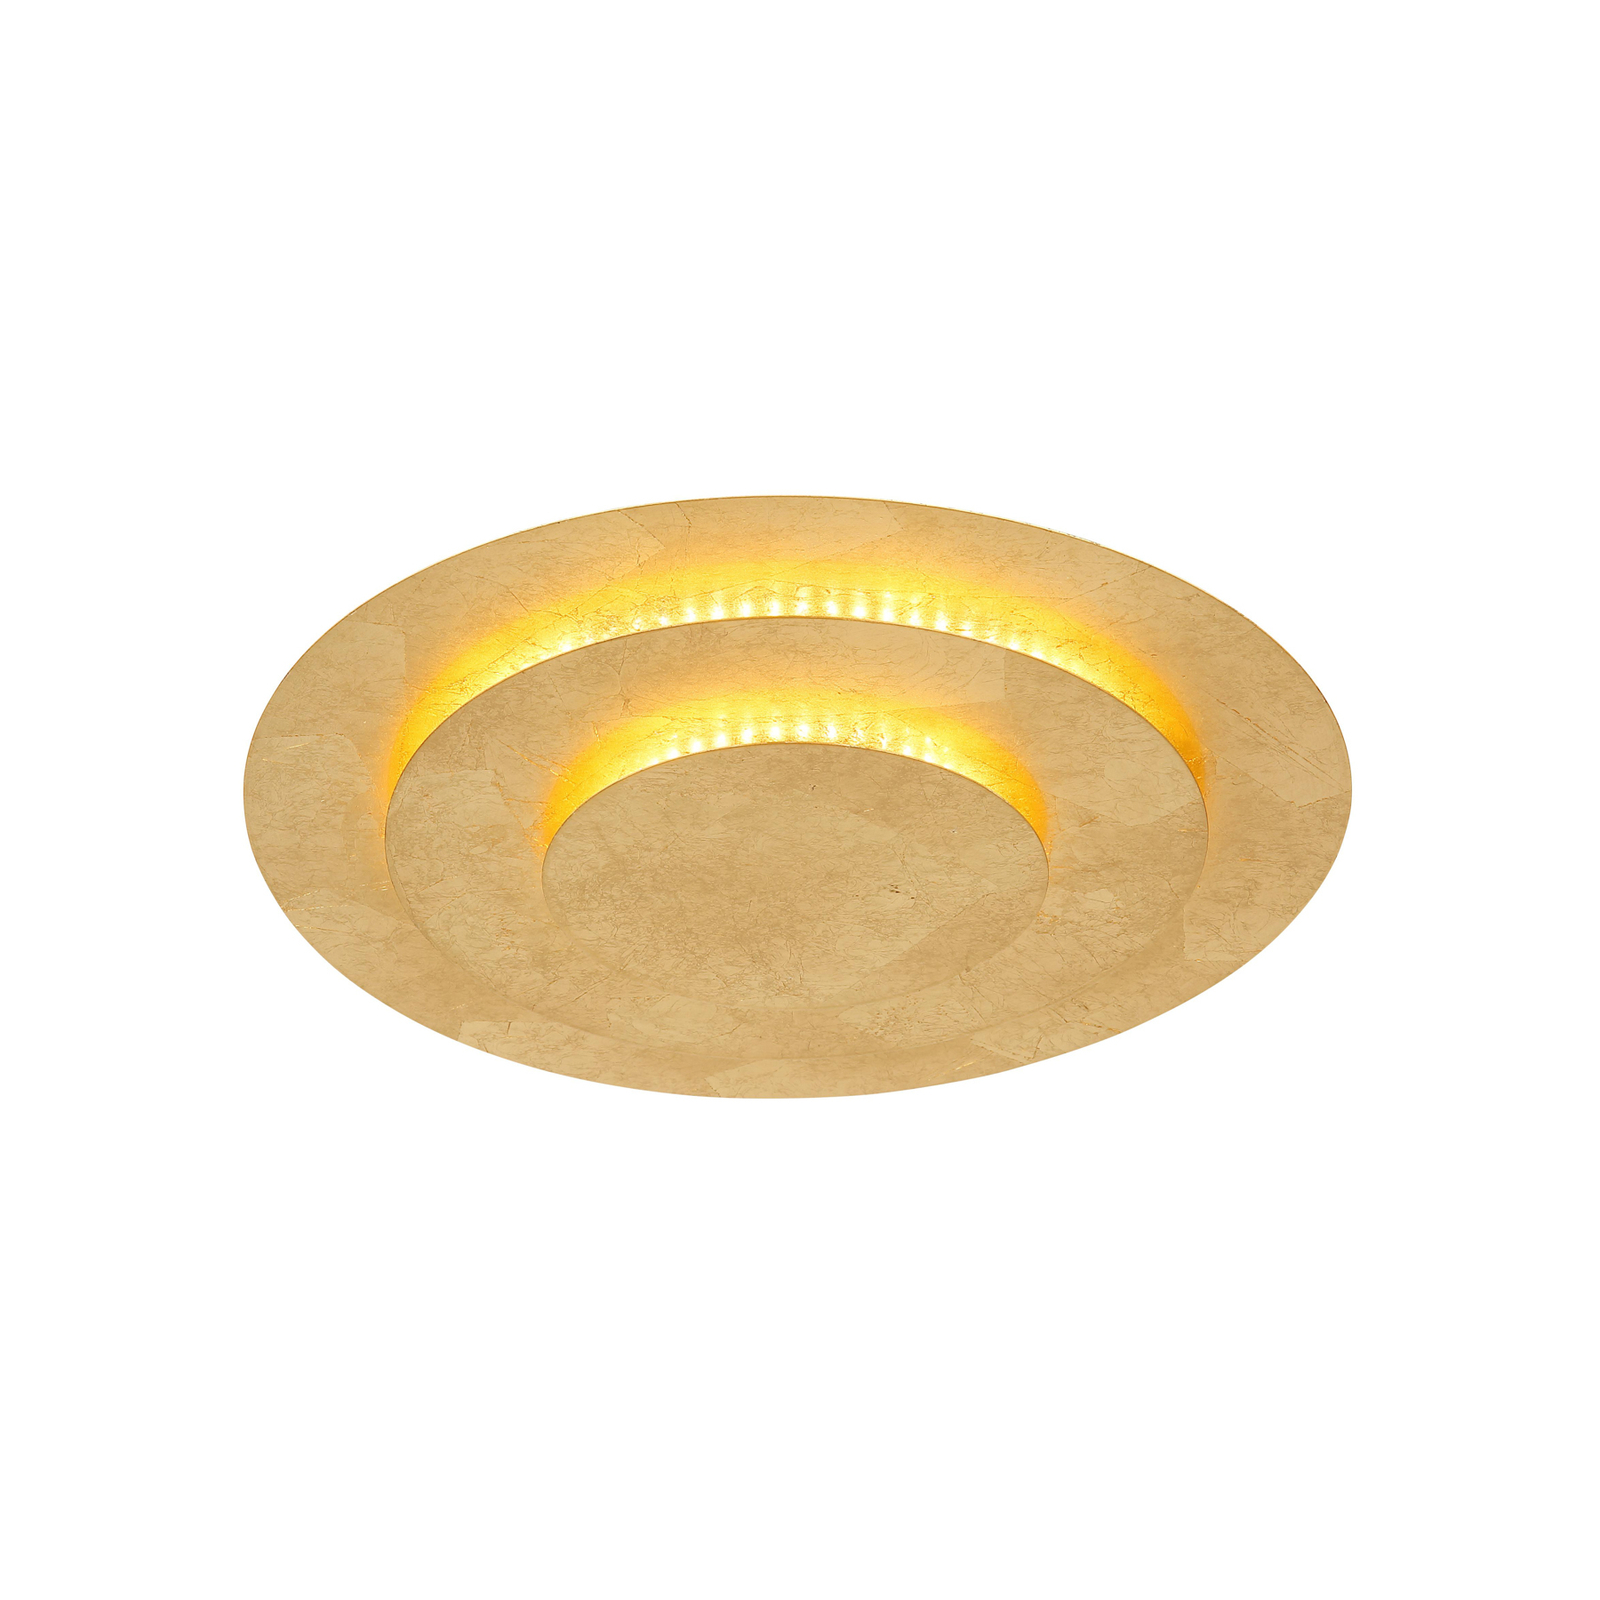 Heda LED mennyezeti lámpa, Ø 35 cm, arany színű, fém